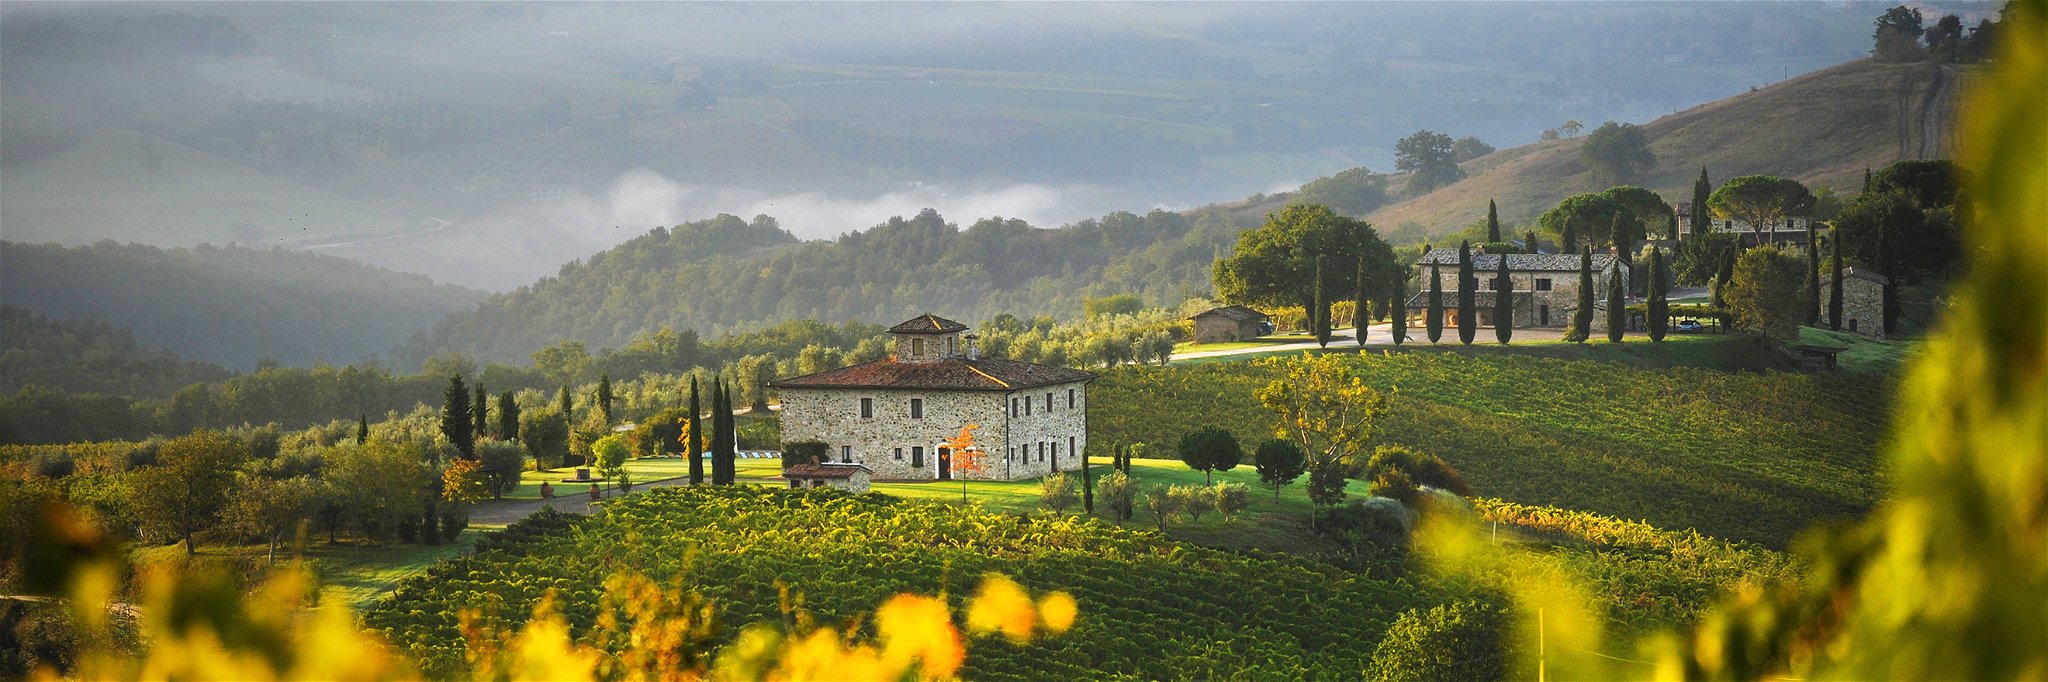 Sanfte Hügel und historische Weingüter prägen das Landschaftsbild.